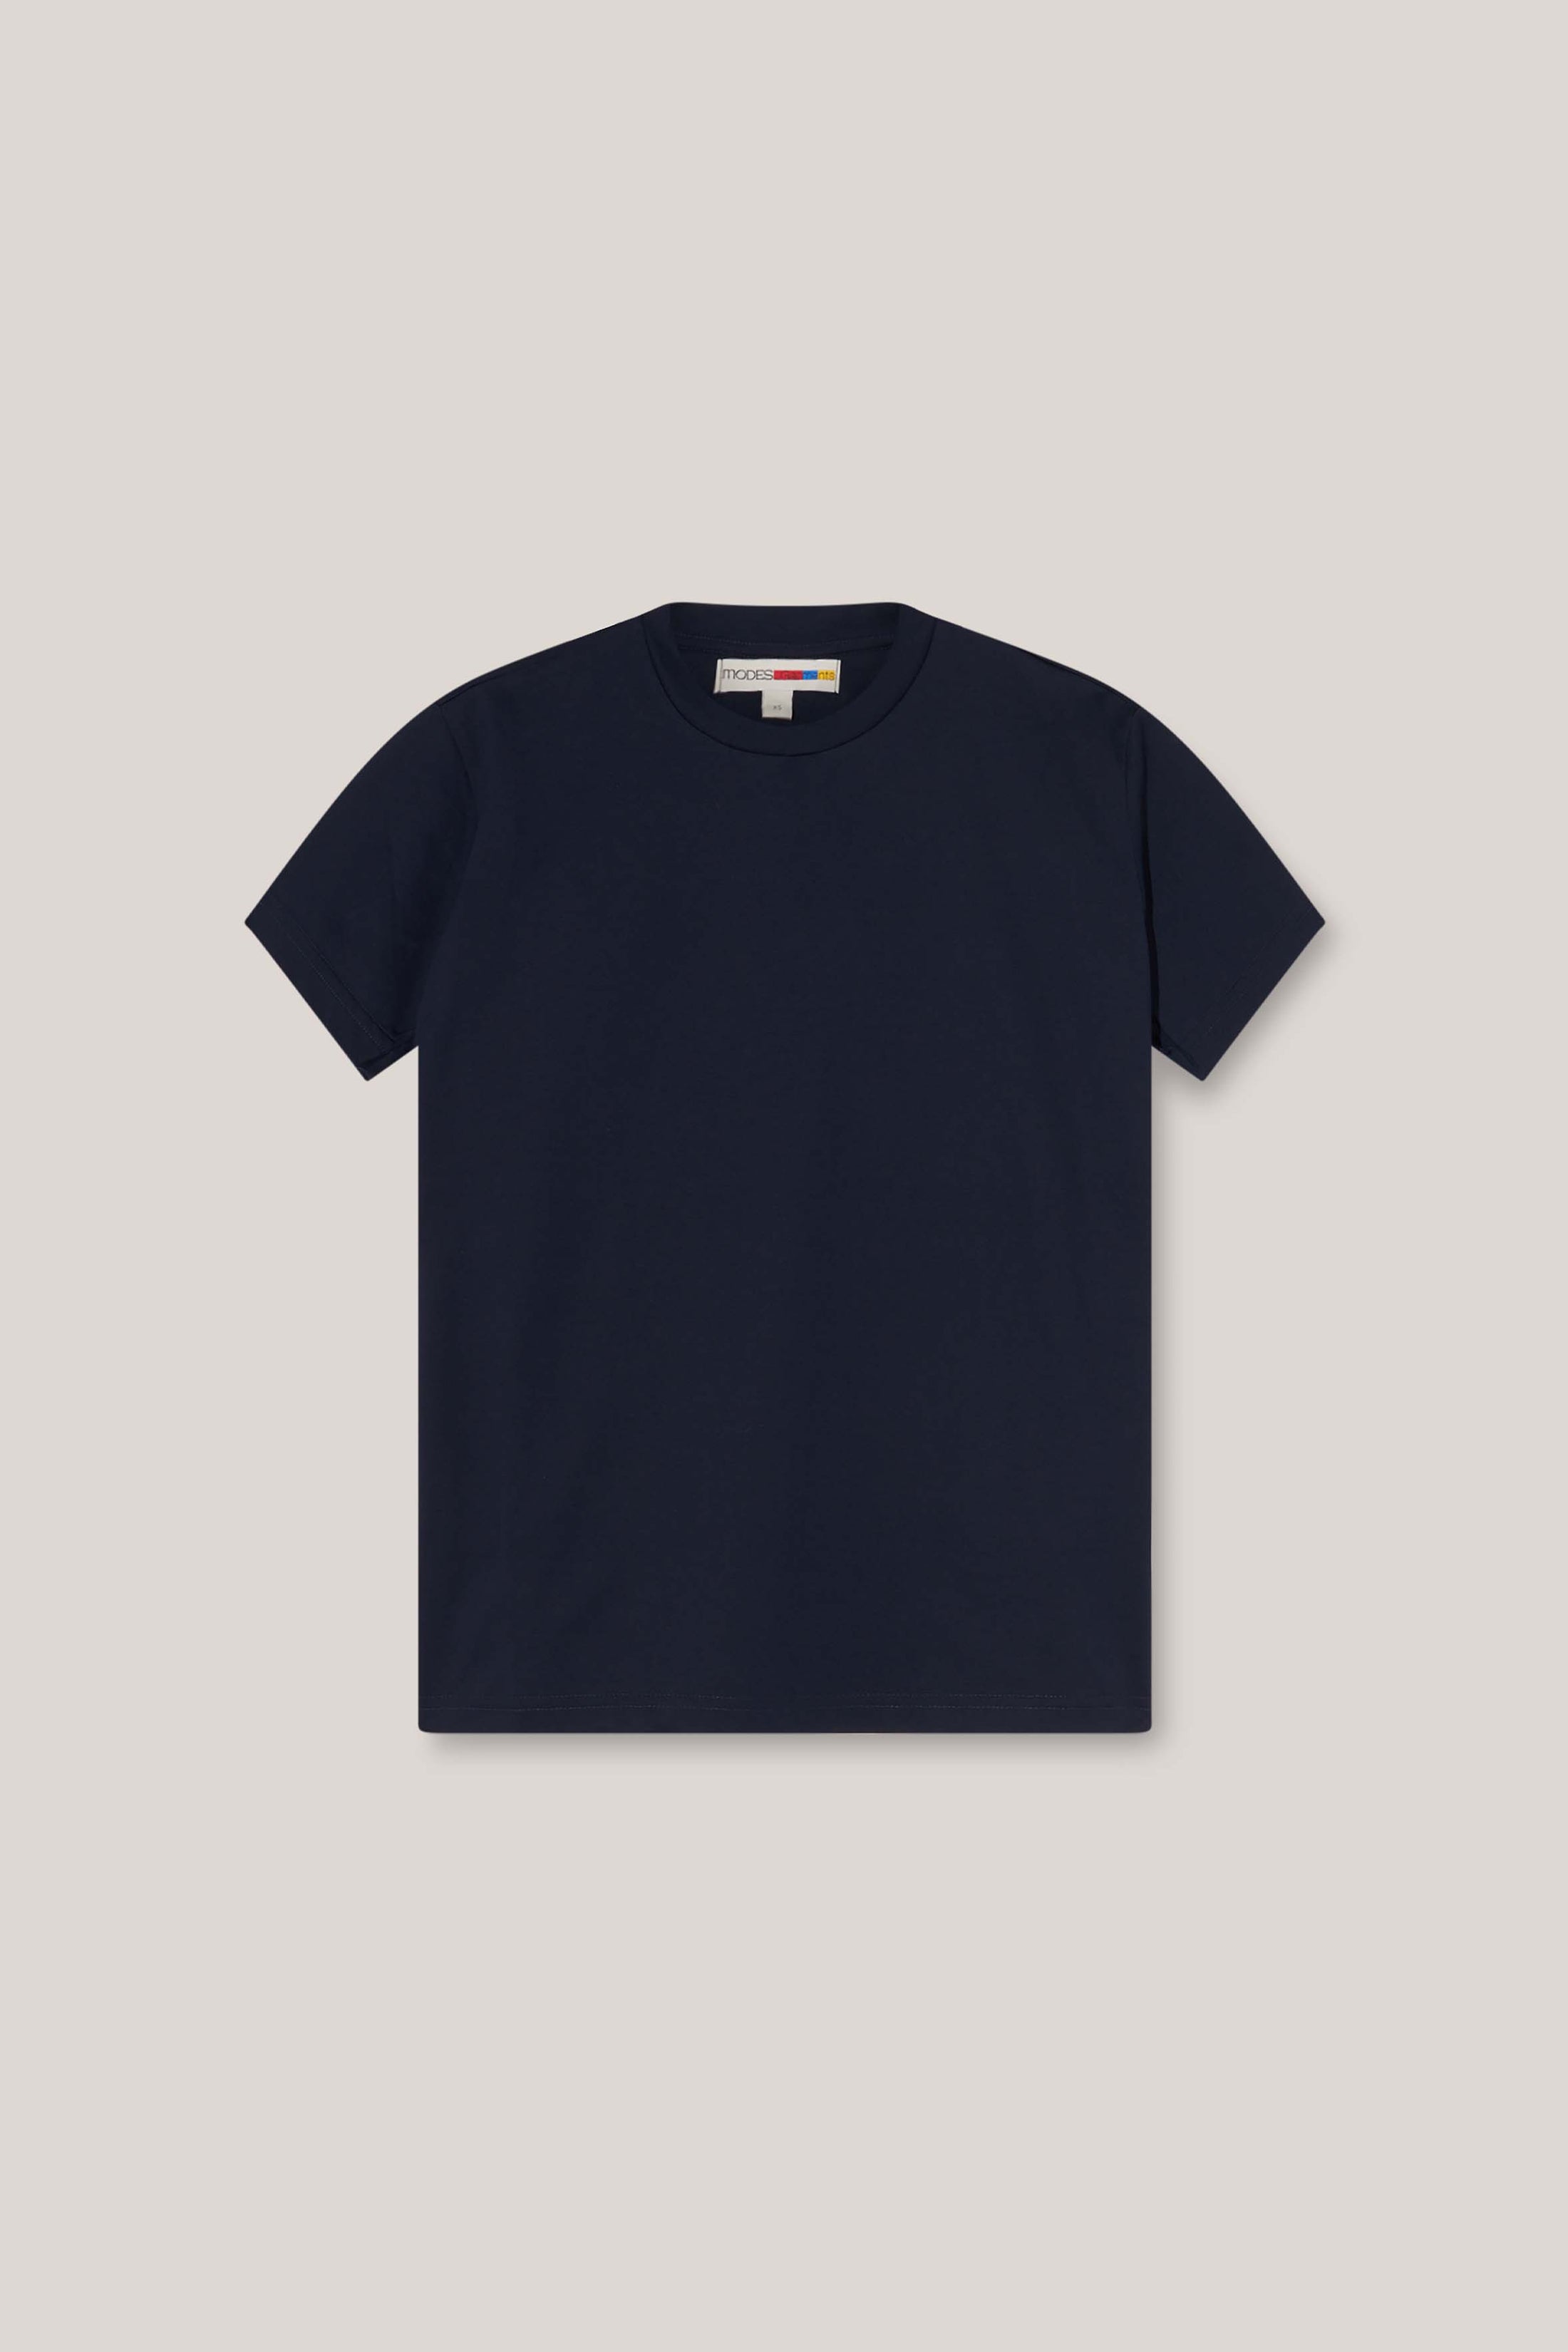 Unisex Plain Blue T-shirt